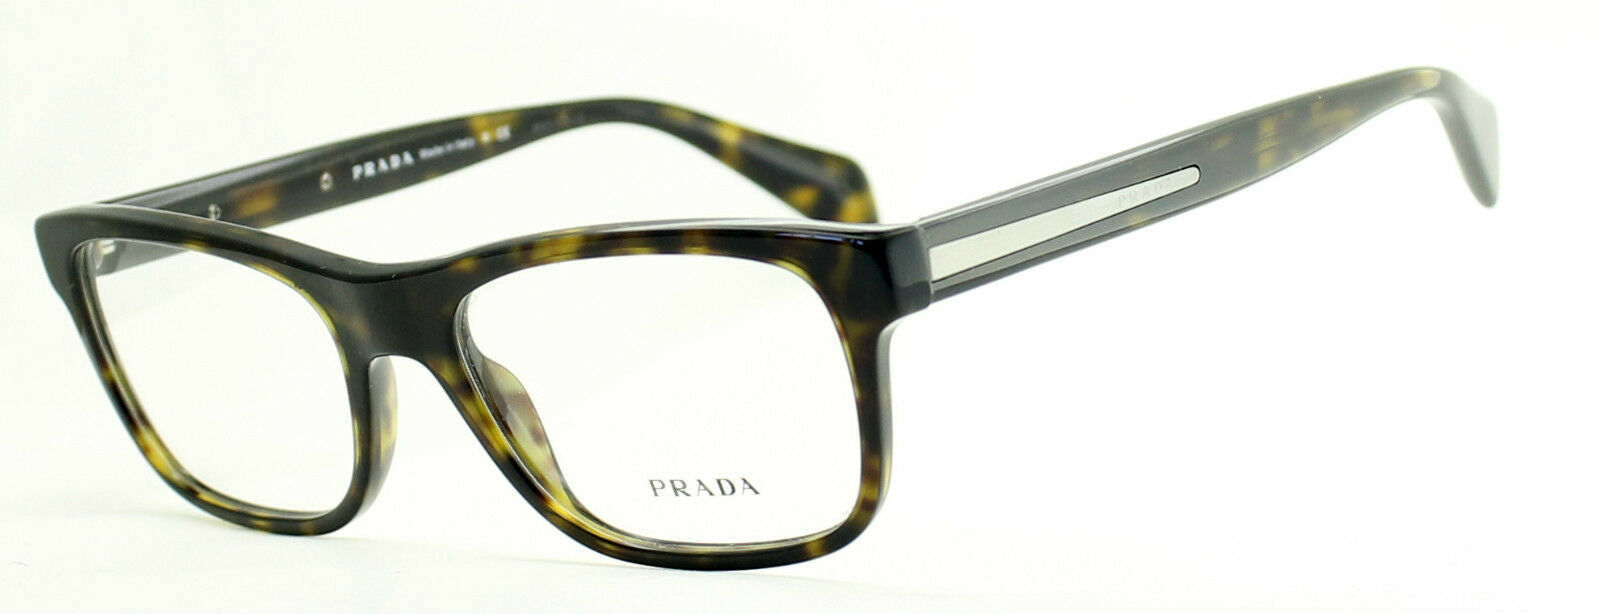 PRADA VPR 19P 2AU-1O1 53mm Eyewear FRAMES RX Optical Eyeglasses Glasses - Italy